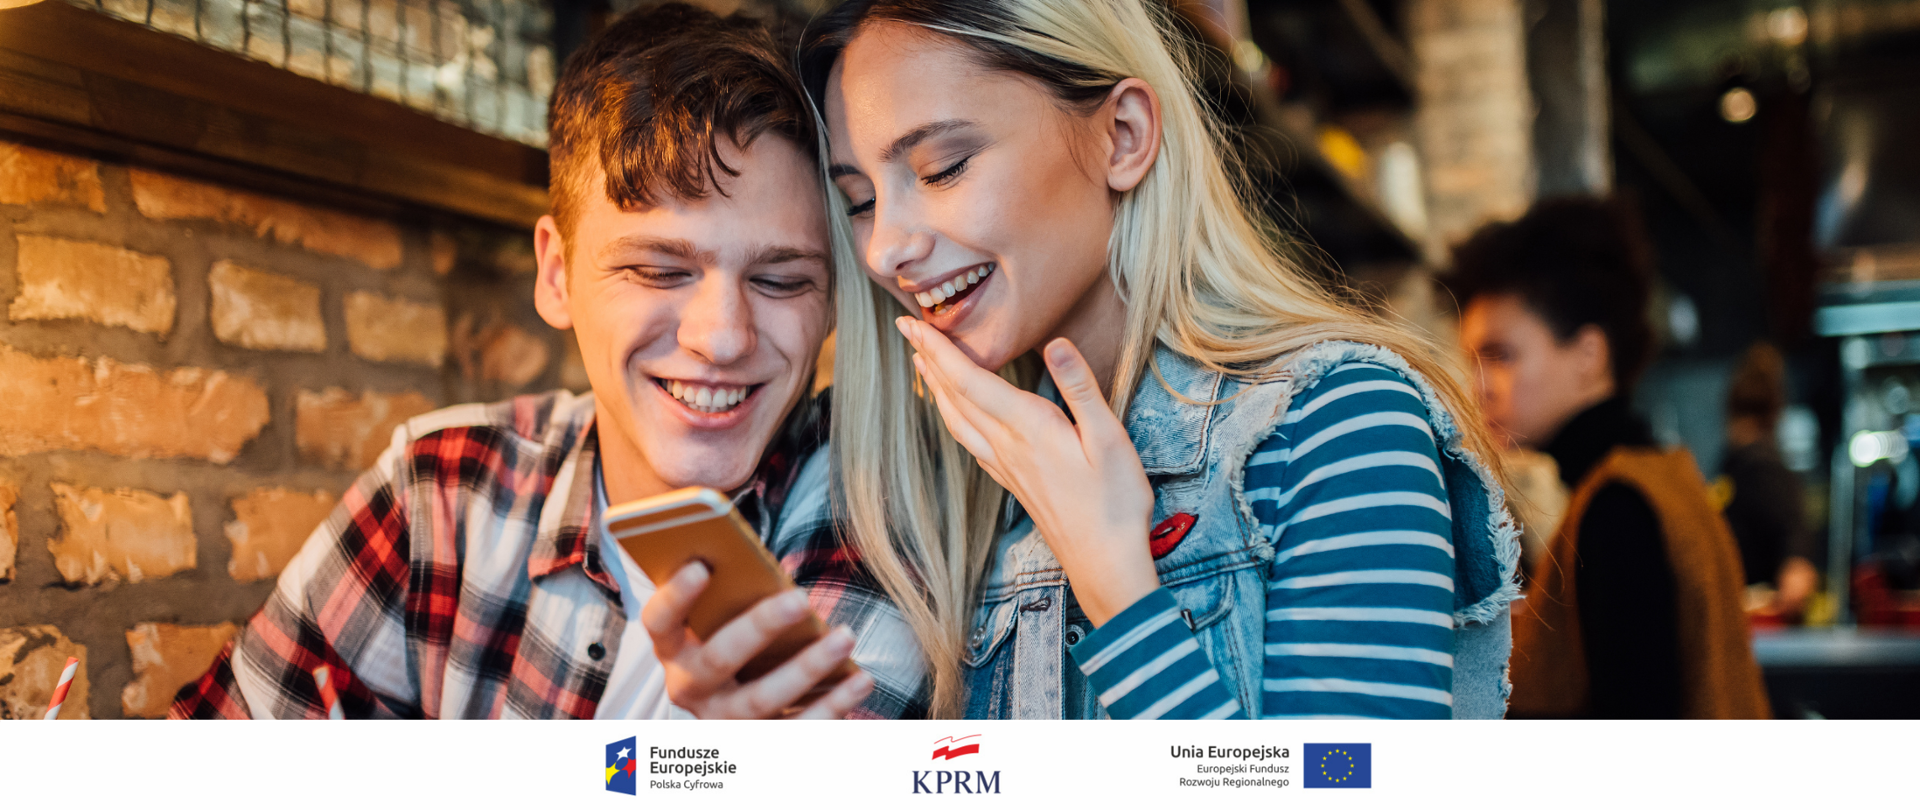 Dwoje uśmiechniętych młodych ludzi (chłopak i dziewczyna) w kawiarni, patrzą w ekran trzymanego przez dziewczynę smartfona.